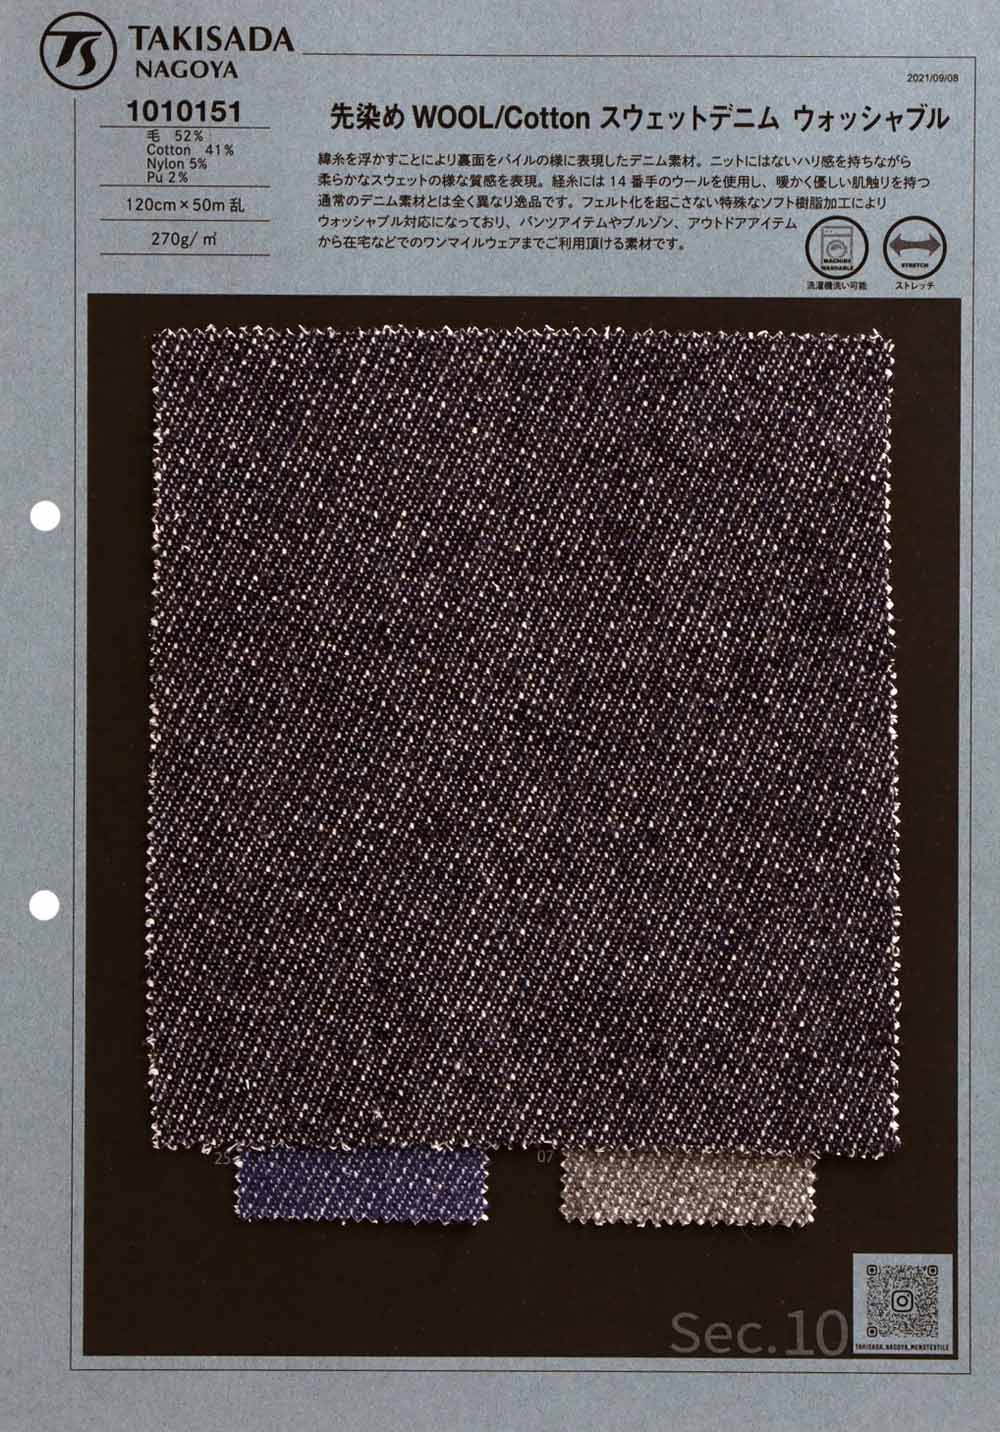 1010151 Wolle Baumwolle Waschbar Garngefärbter Sweat Denim[Textilgewebe] Takisada Nagoya